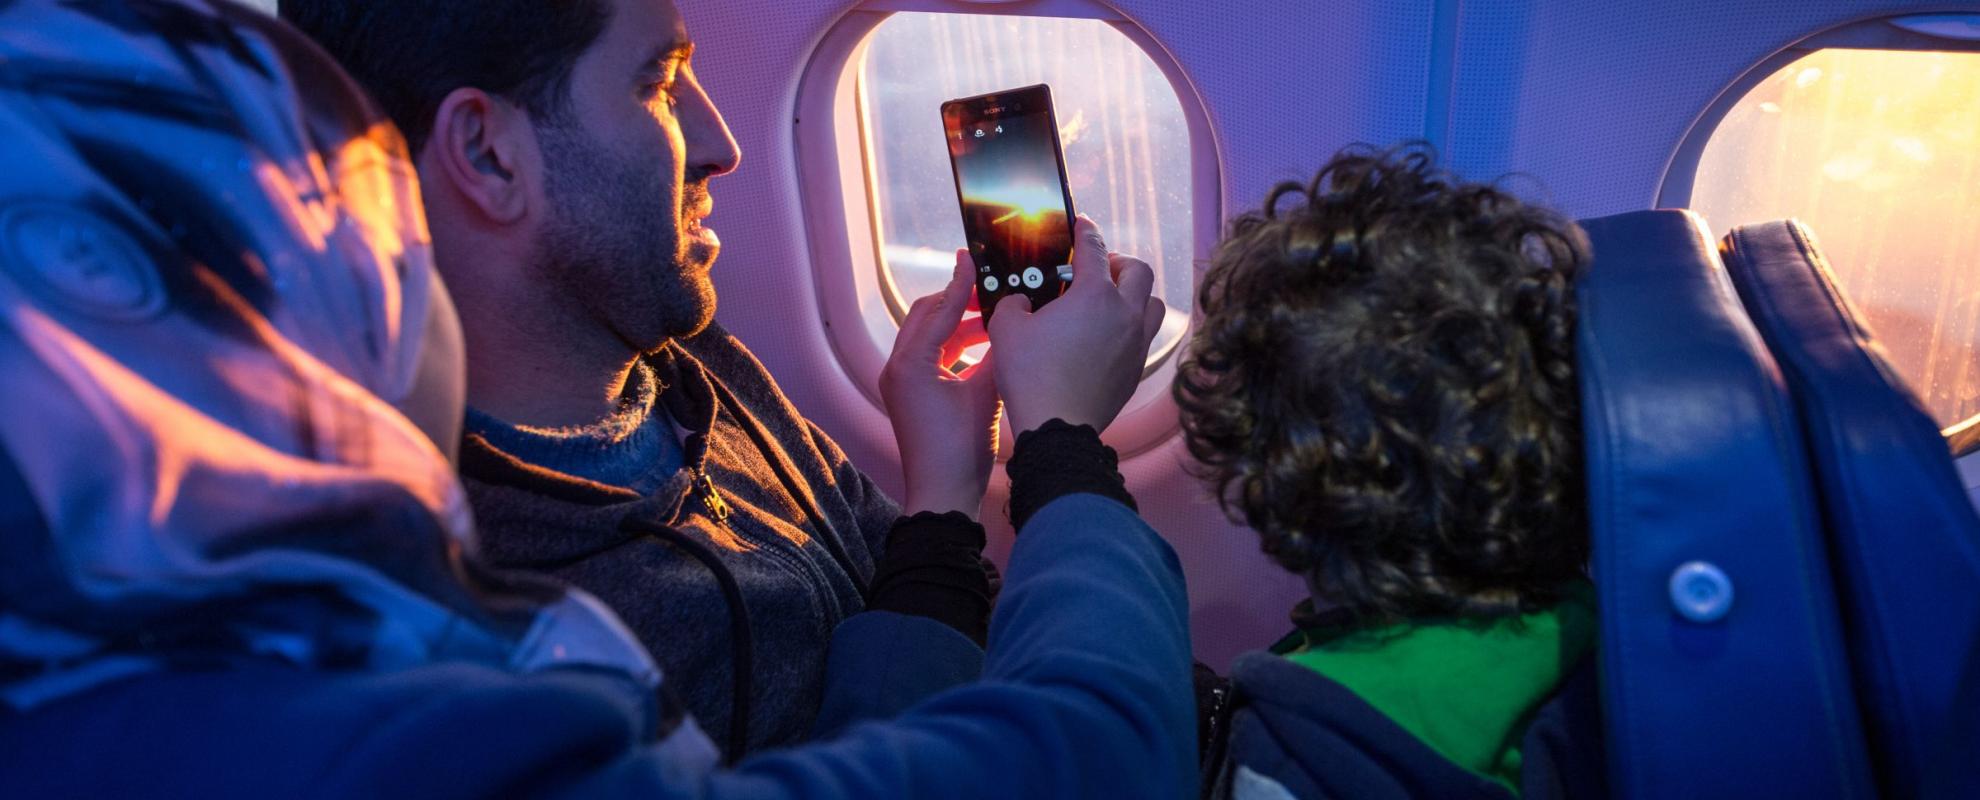 Passagiers nemen een foto door het vliegtuigraampje © IOM/Muse Mohammed 2015